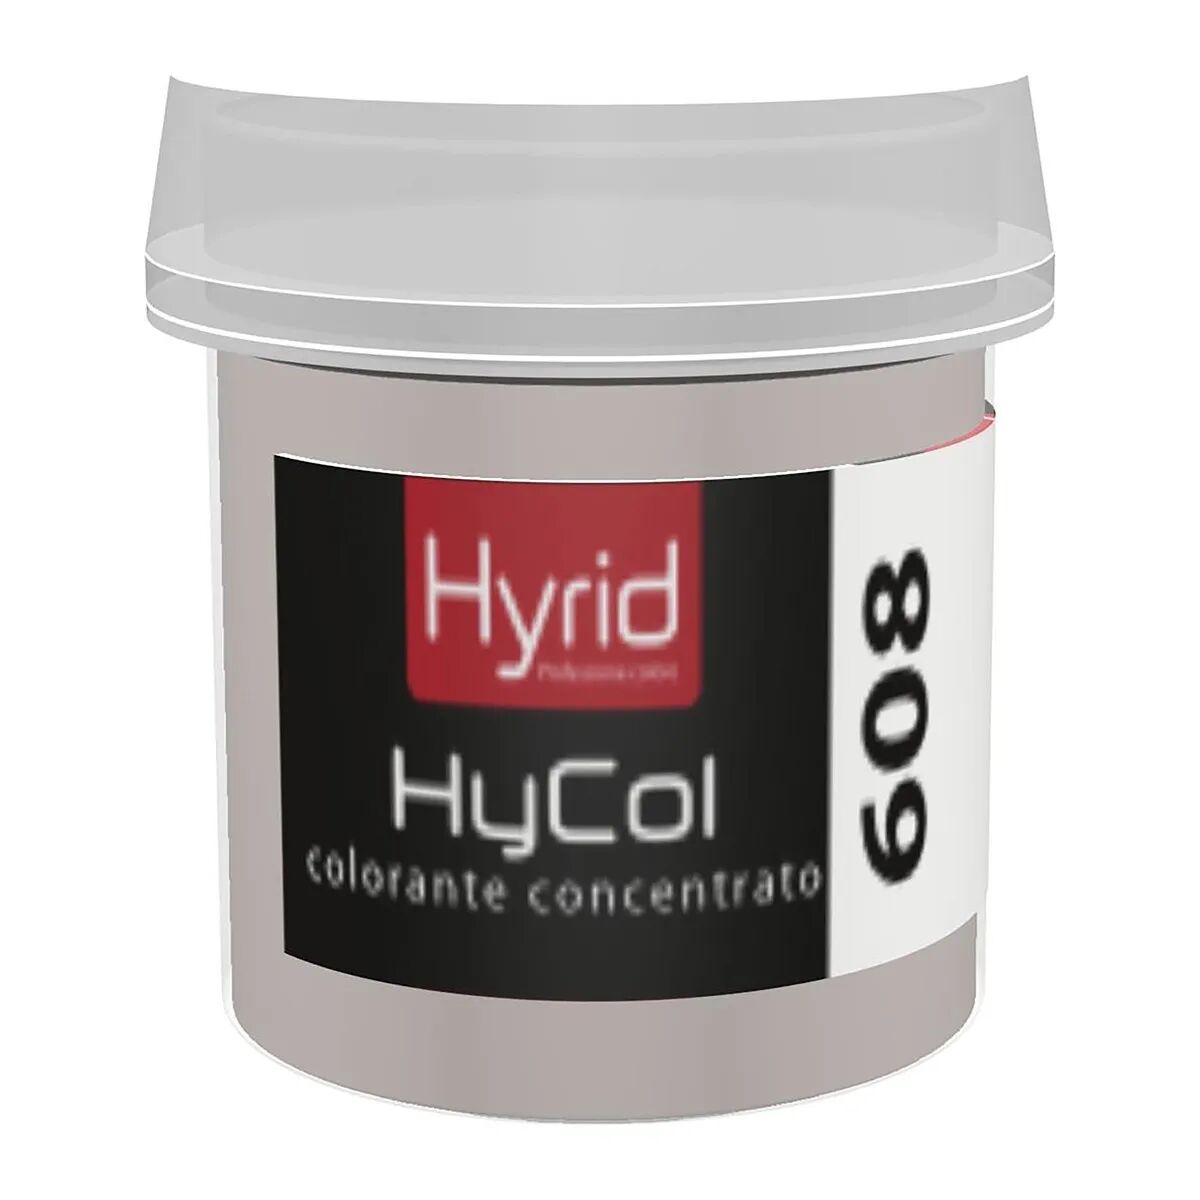 Hyrid By Covema COLORANTE CONCENTRATO HYCOL 608 HYRID CORDA AMBIENTE 80 ml PER FINITURE DECORATIVE